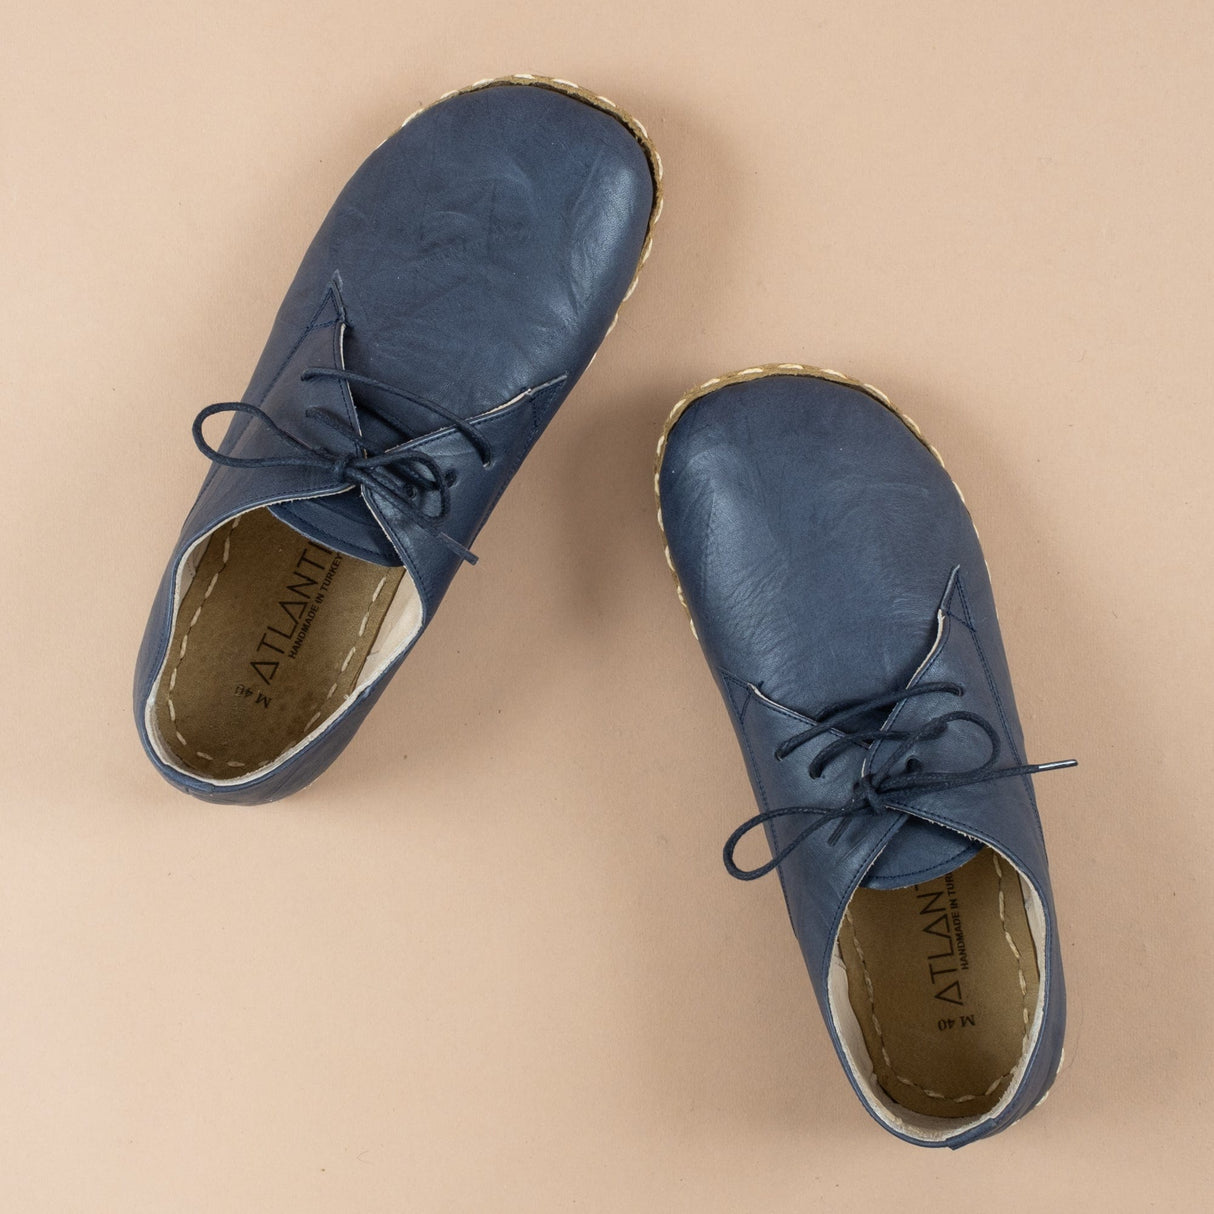 Marineblaue Oxford-Schuhe für Damen